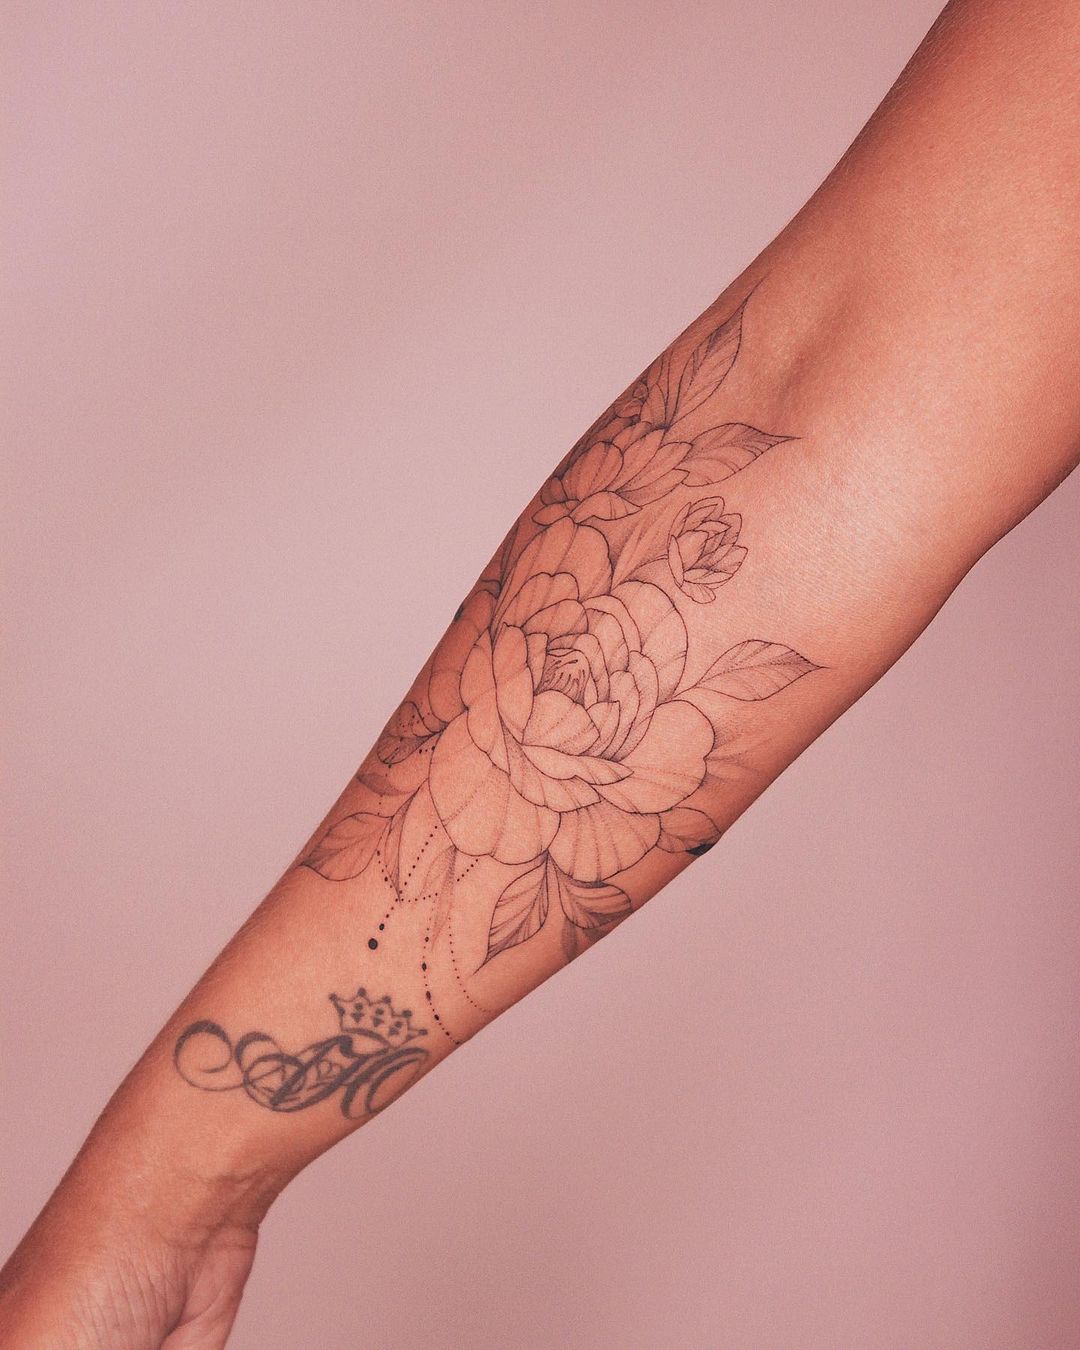 Fine Line Tattoo on Forearm Tattoo Idea | Geometry tattoo, Line tattoos, Dr  woo tattoo